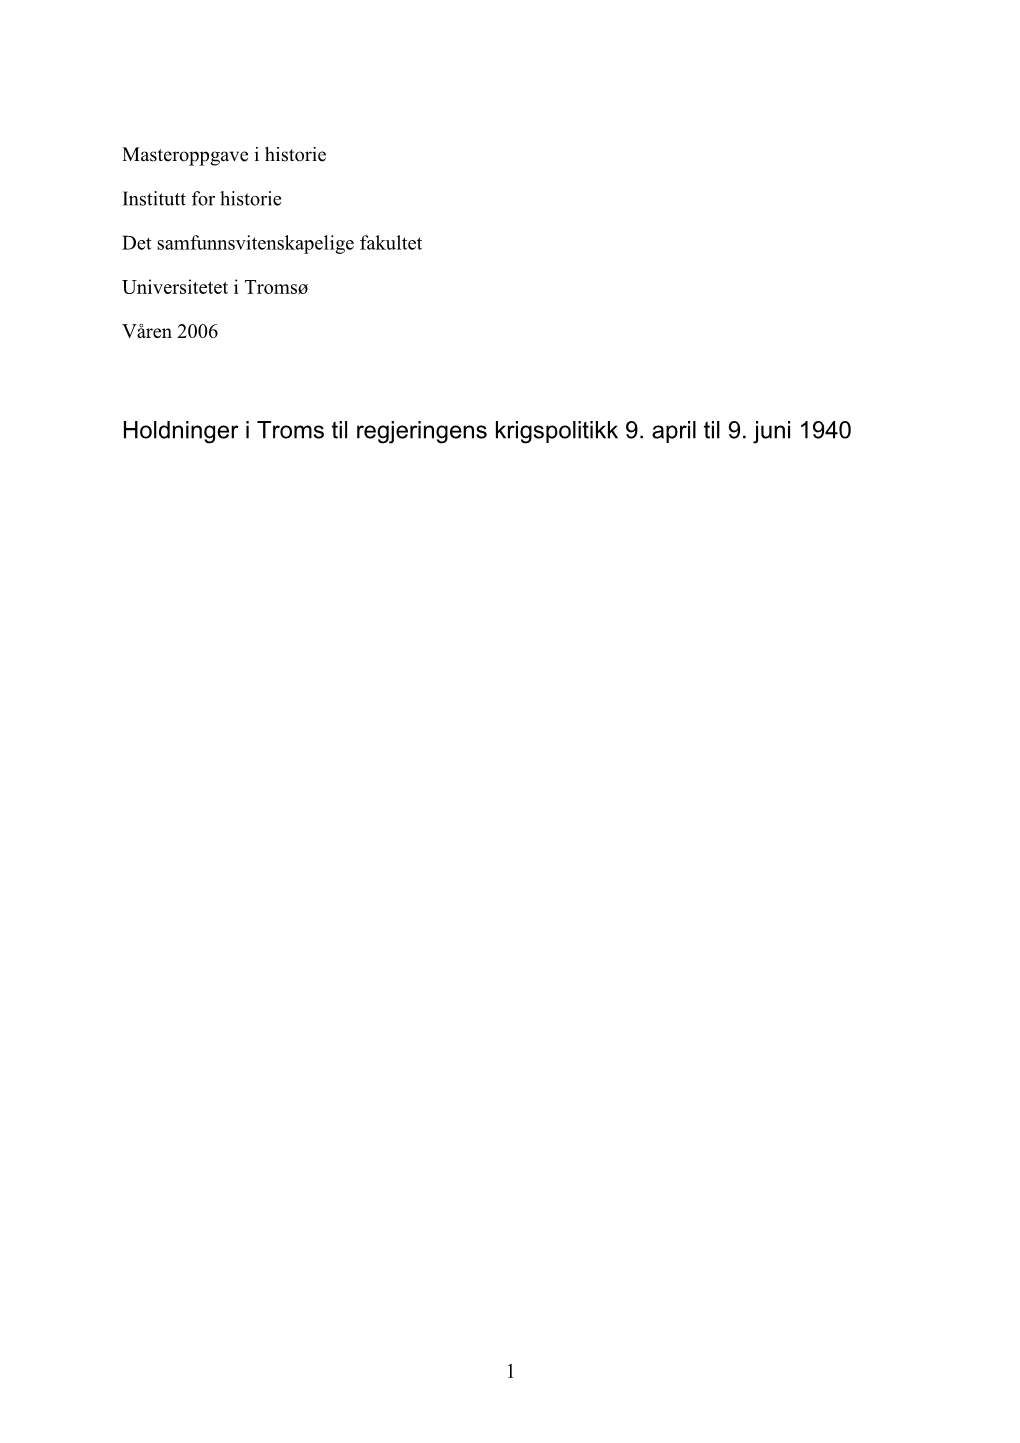 Holdninger I Troms Til Regjeringens Krigspolitikk 9. April Til 9. Juni 1940